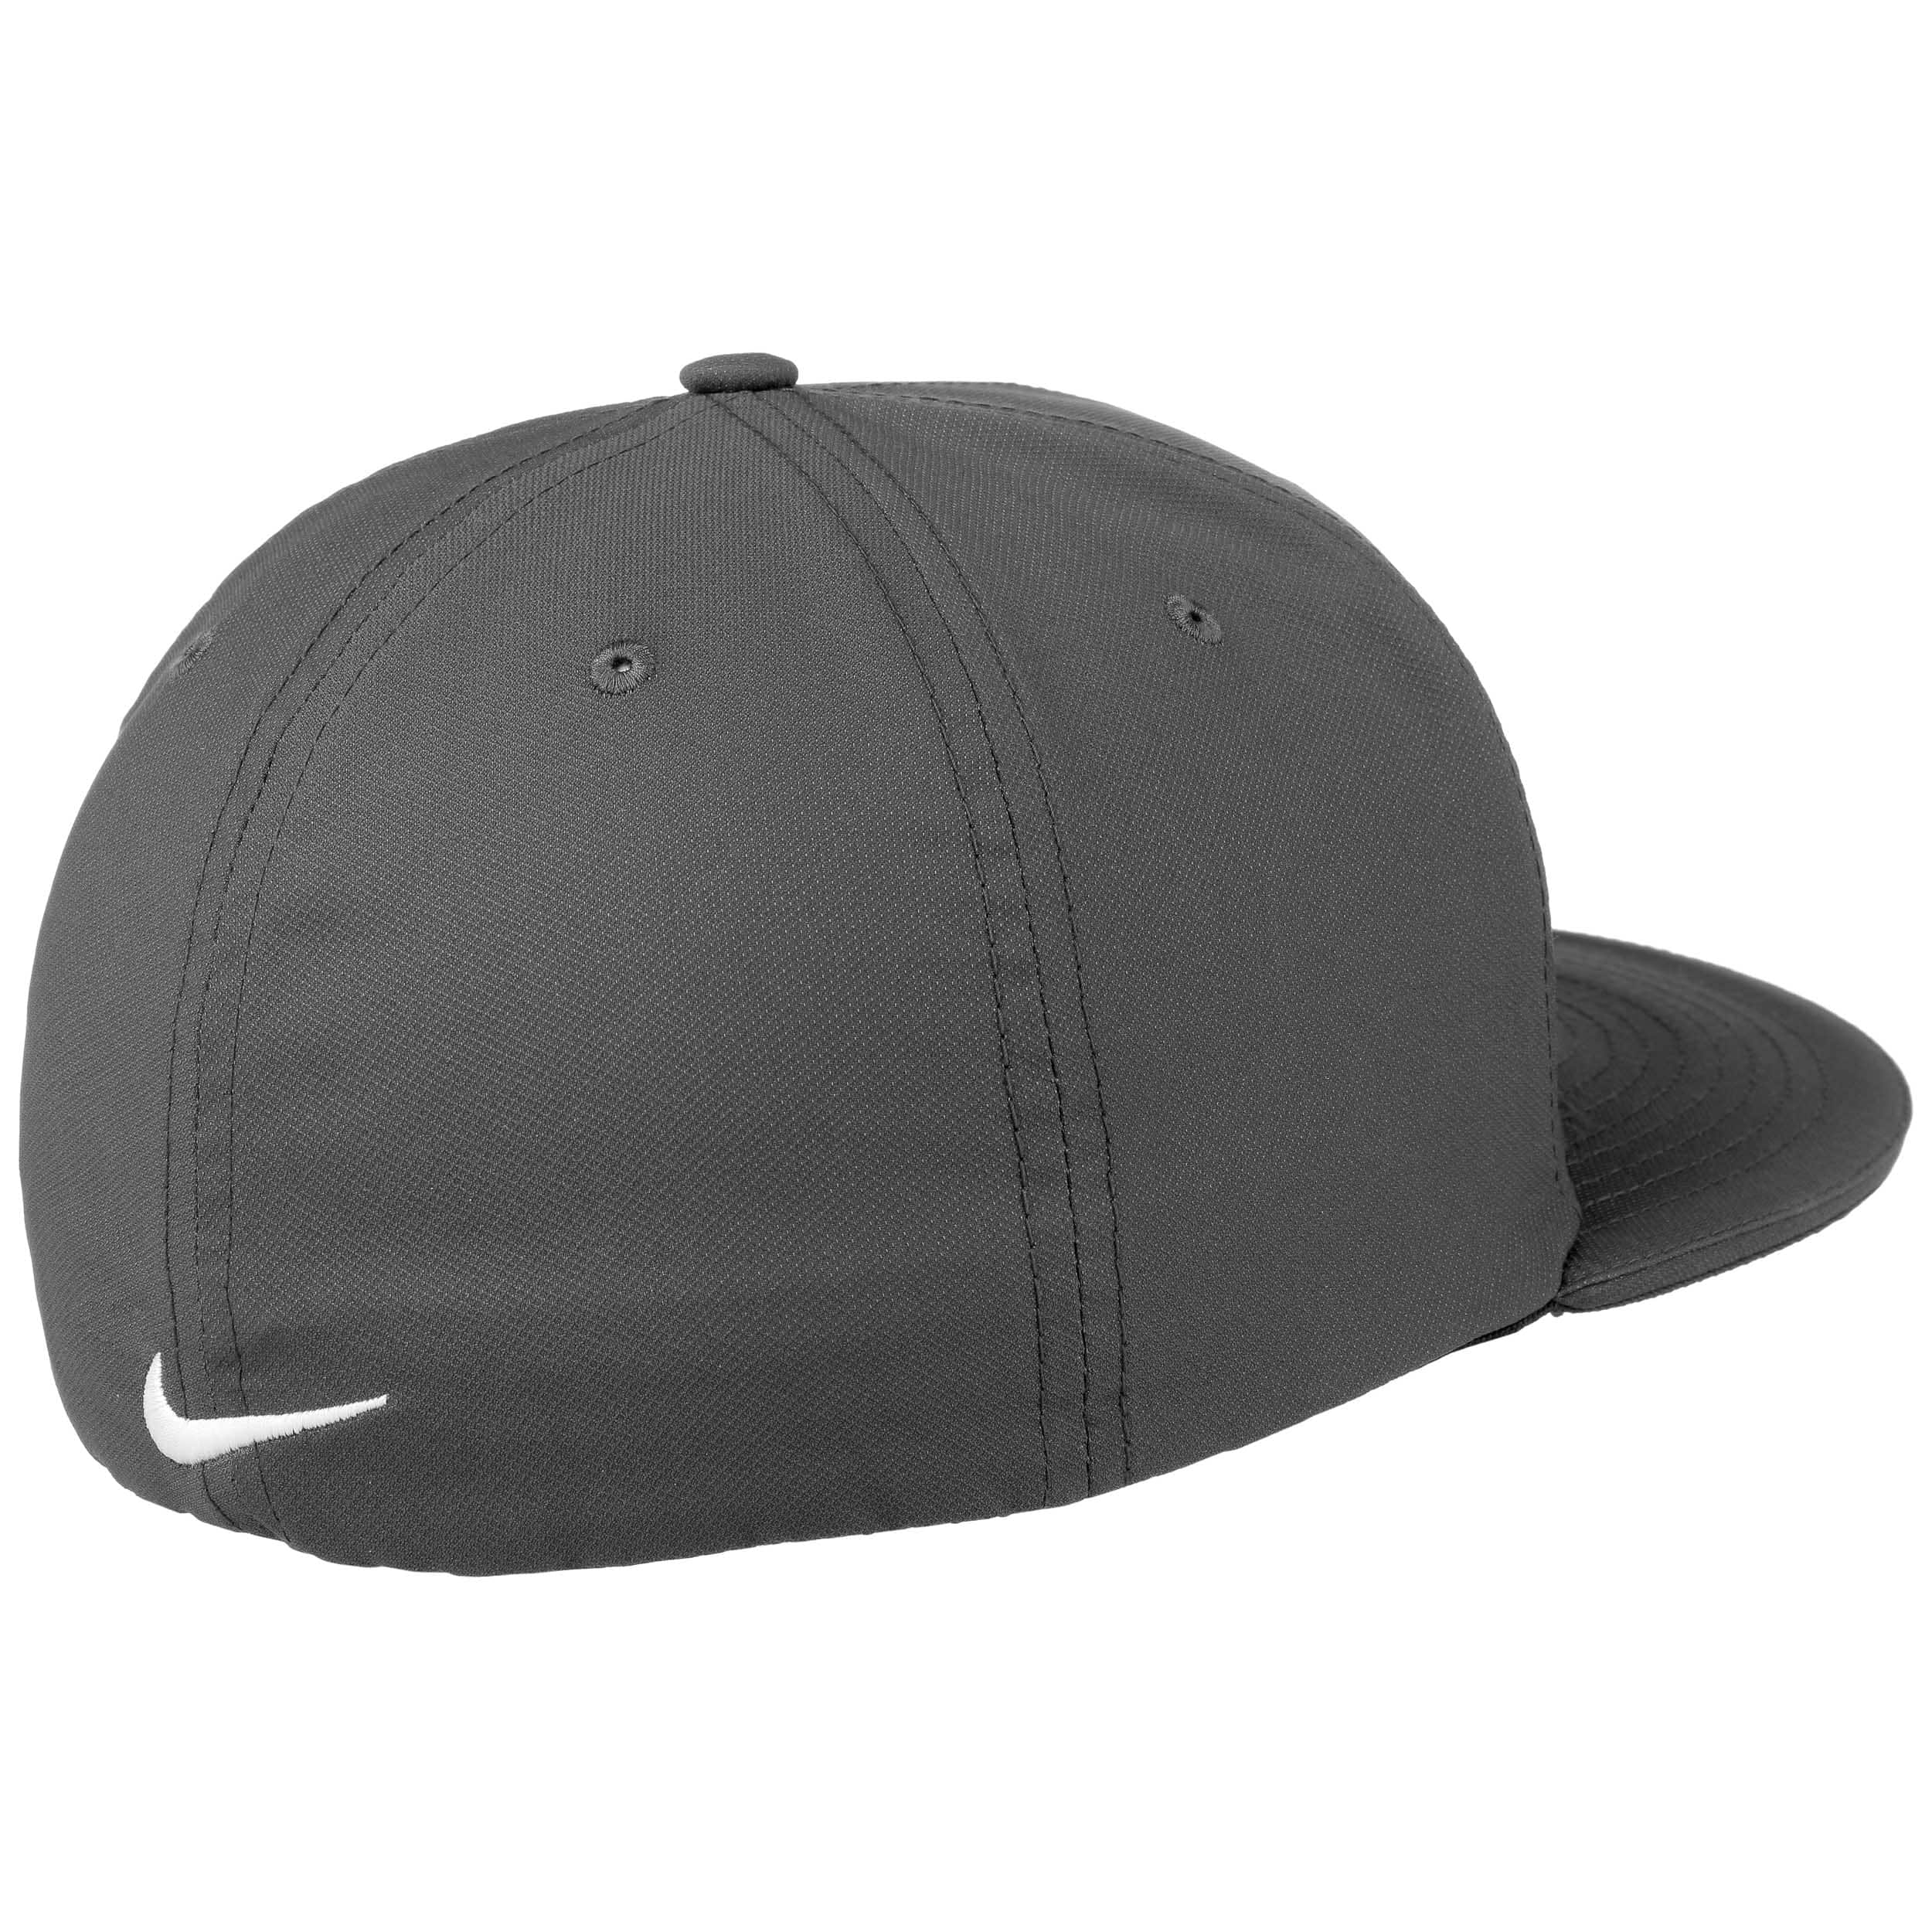 True Statement Clima Uni Cap by Nike, EUR 32,95 --> Hats, caps ...